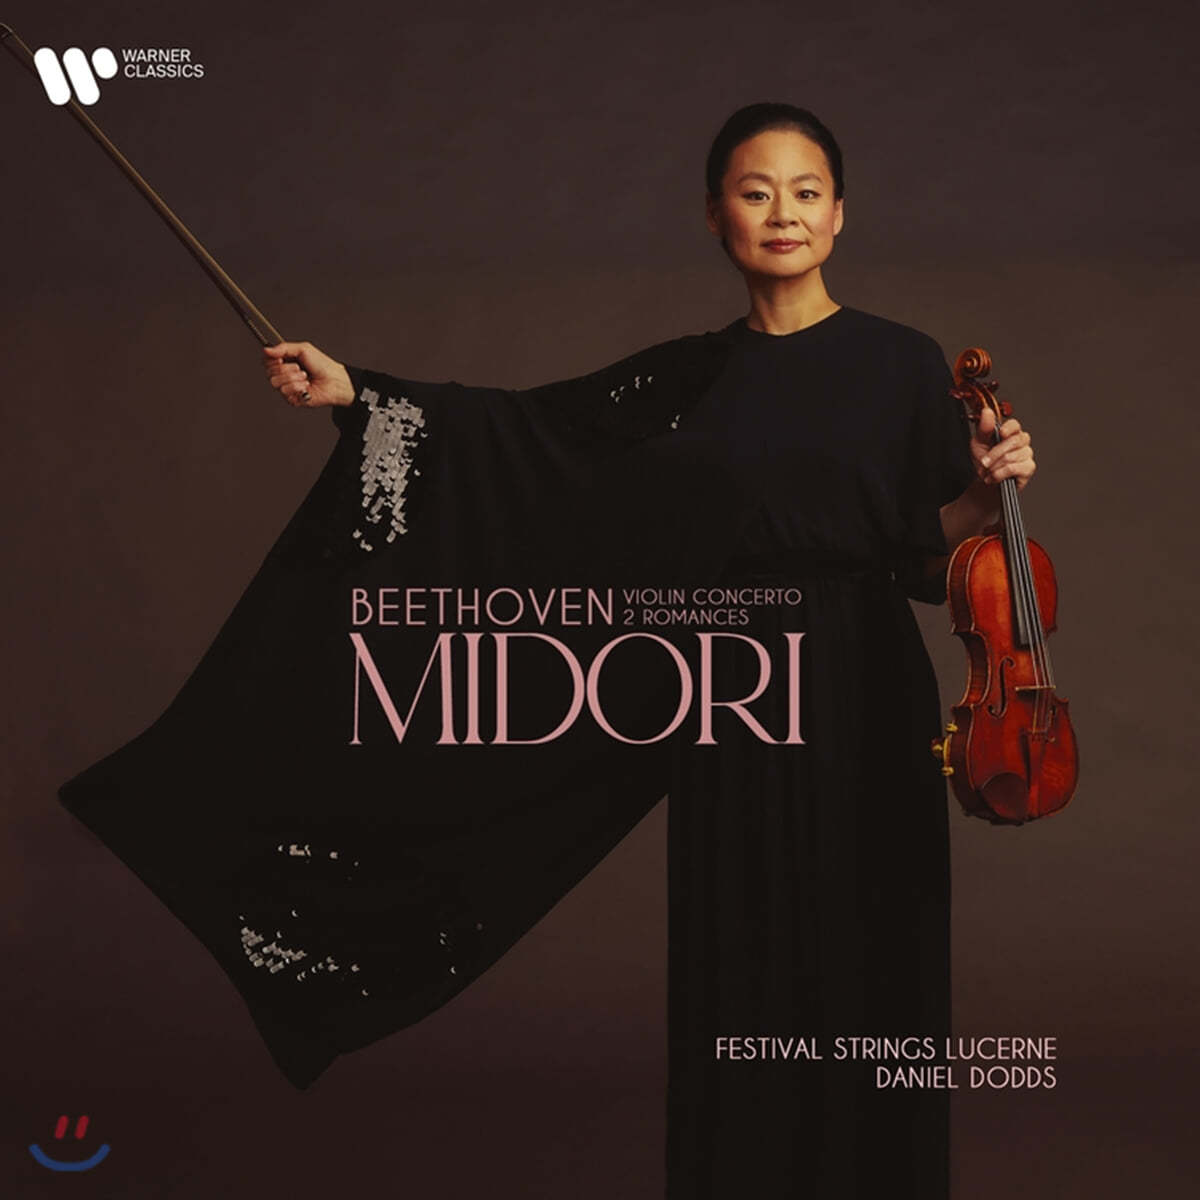 Midori 베토벤: 바이올린 협주곡, 2개의 로망스 - 미도리 (Beethoven: Violin Concerto Op.61, Romances) 